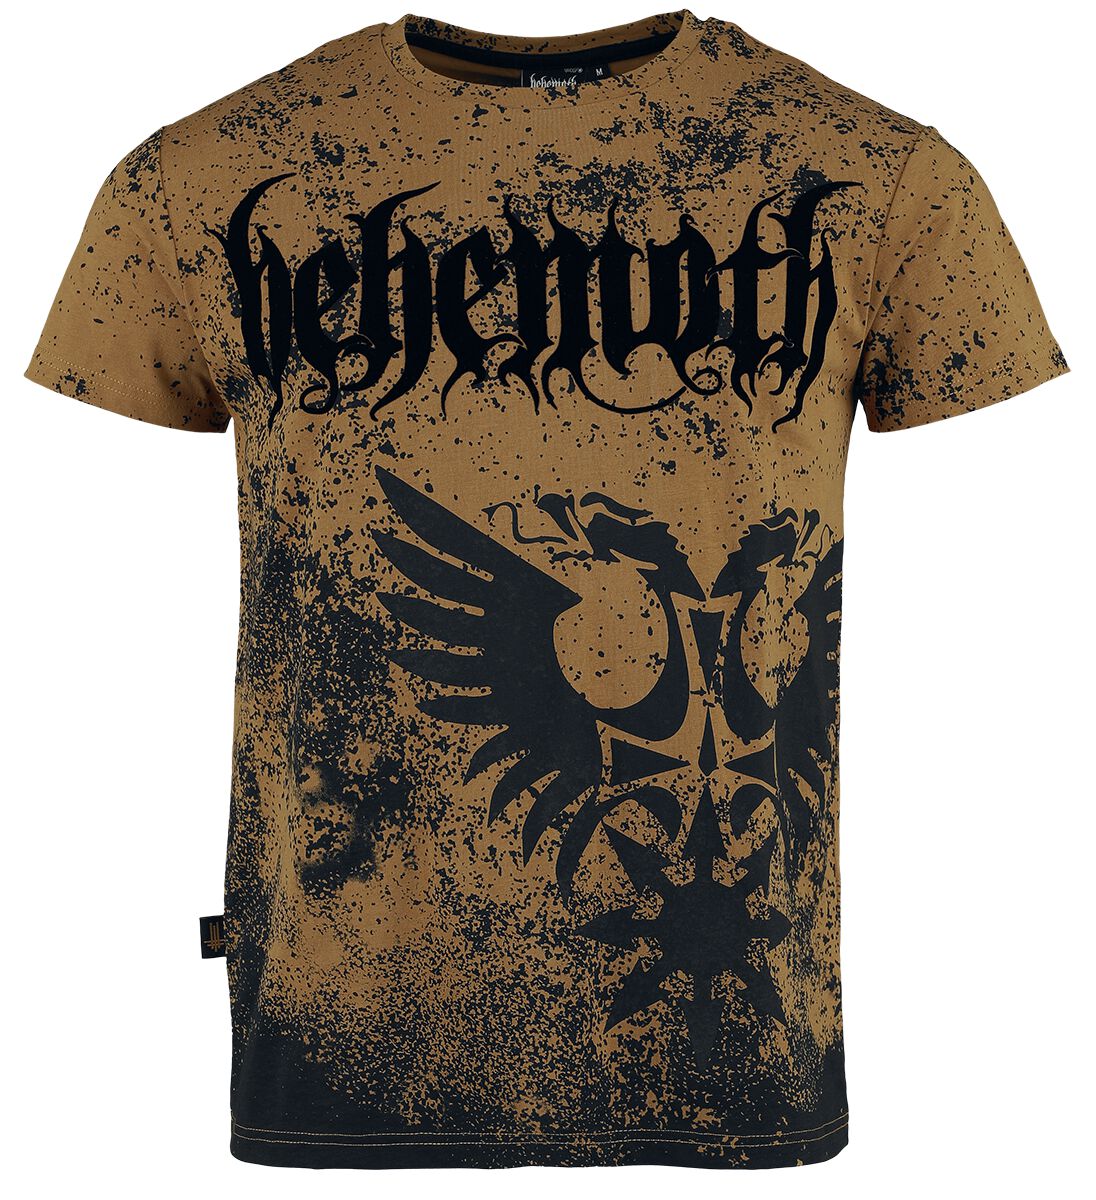 Behemoth T-Shirt - EMP Signature Collection - S bis XXL - für Männer - Größe L - braun/schwarz  - EMP exklusives Merchandise!